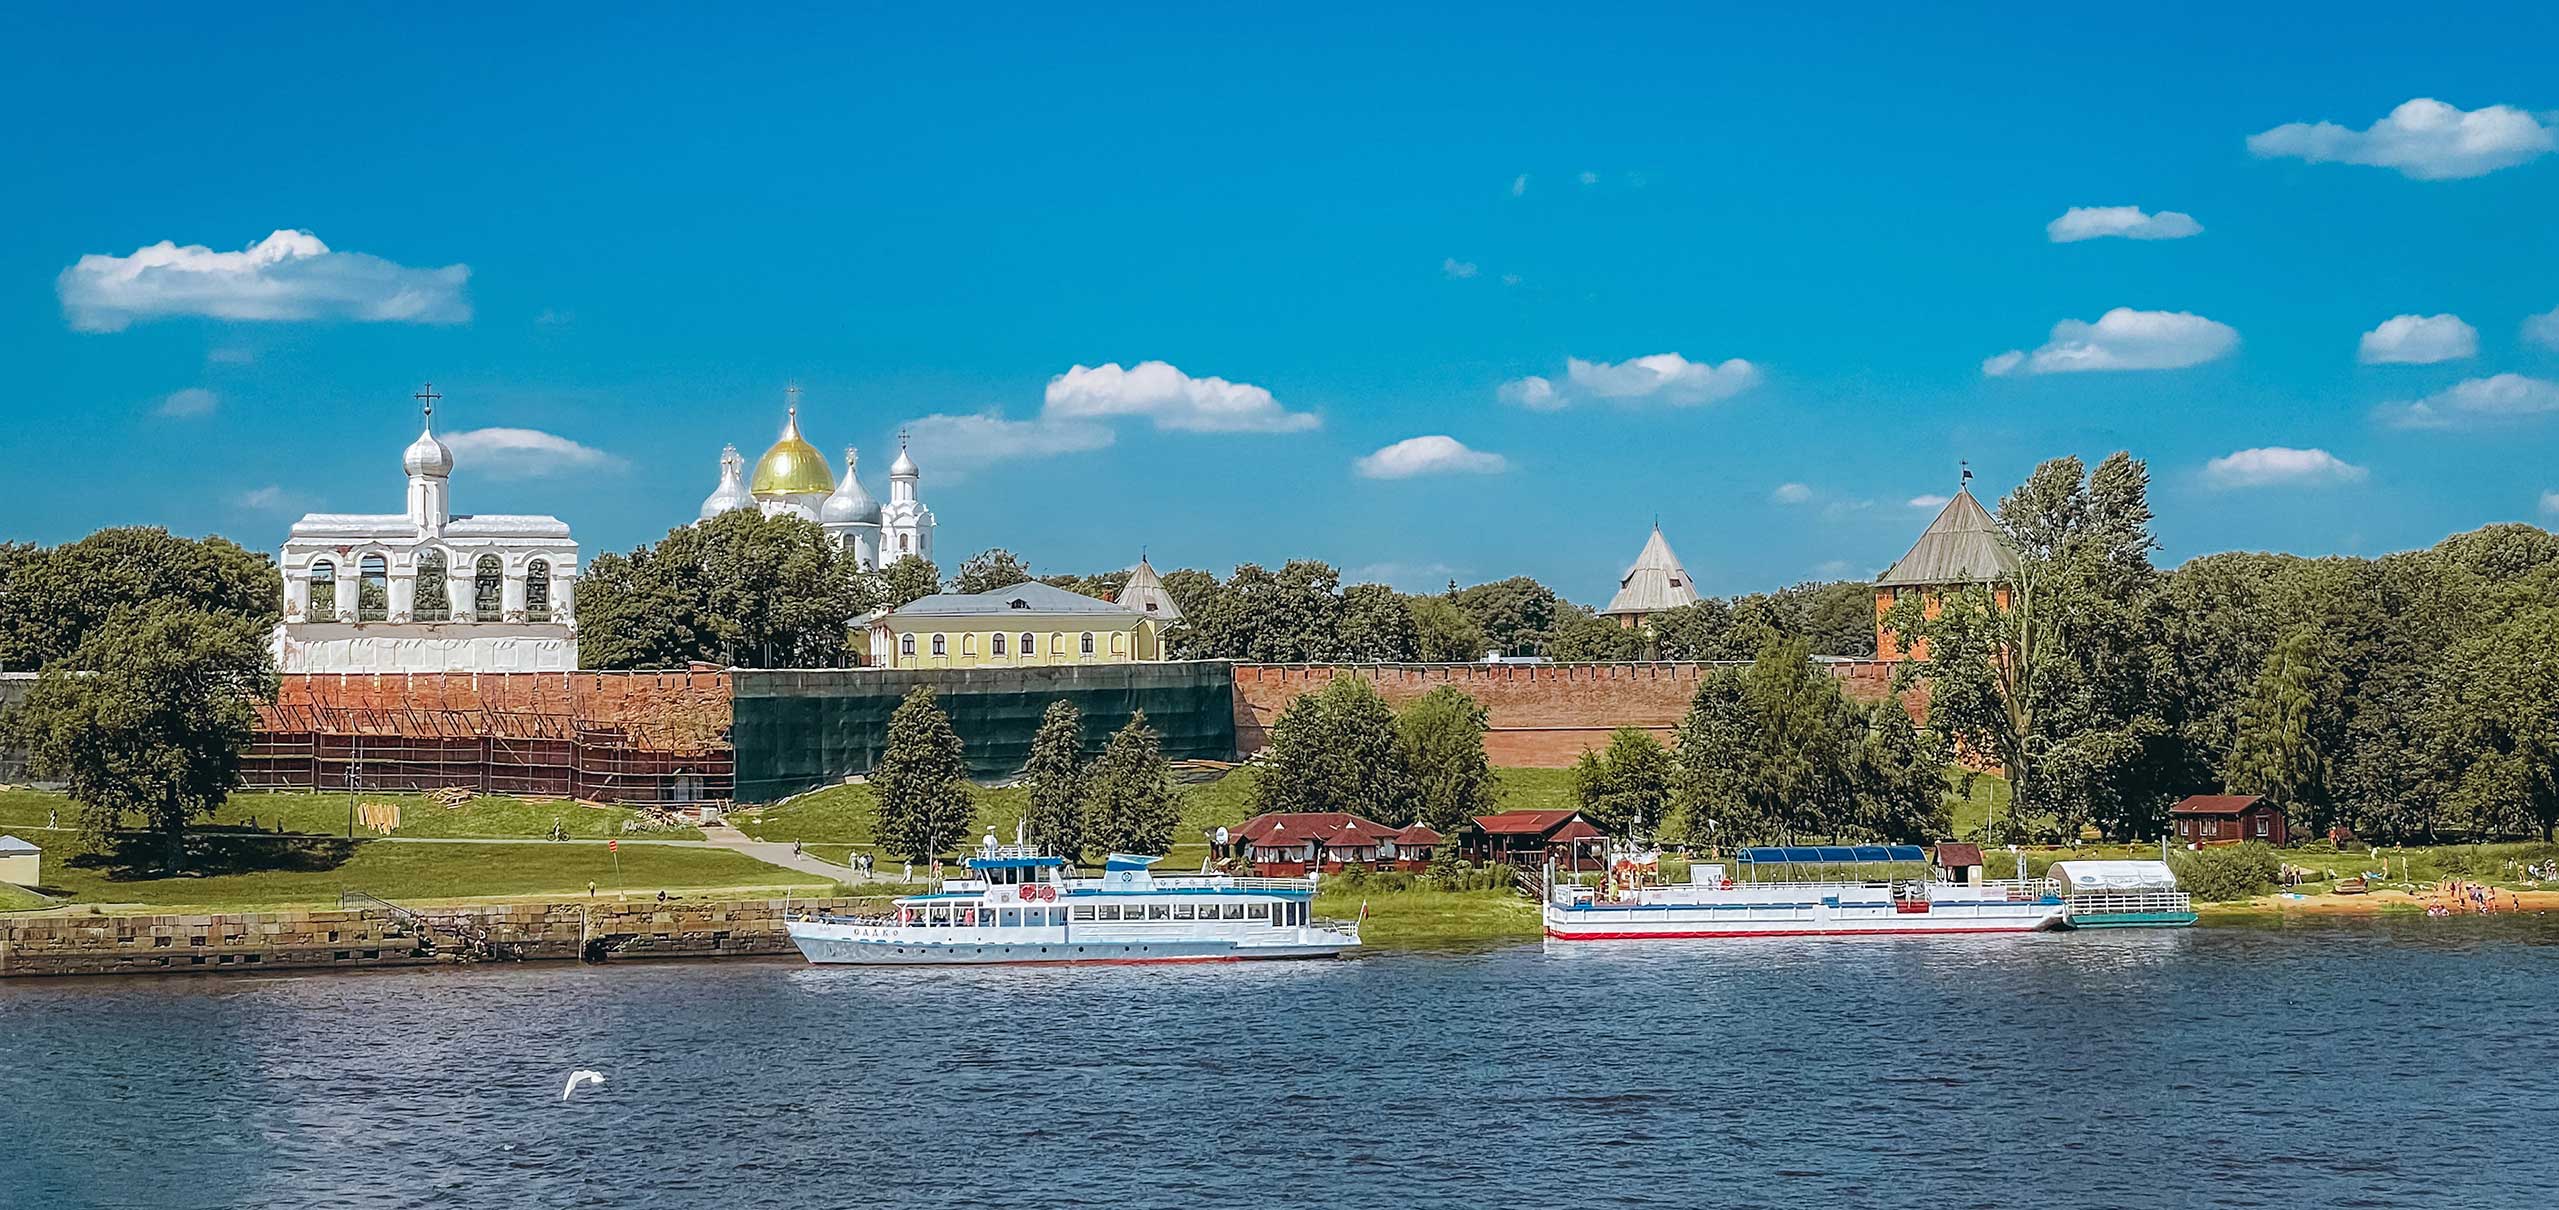 Новгород.  Колыбель и забвение демократии